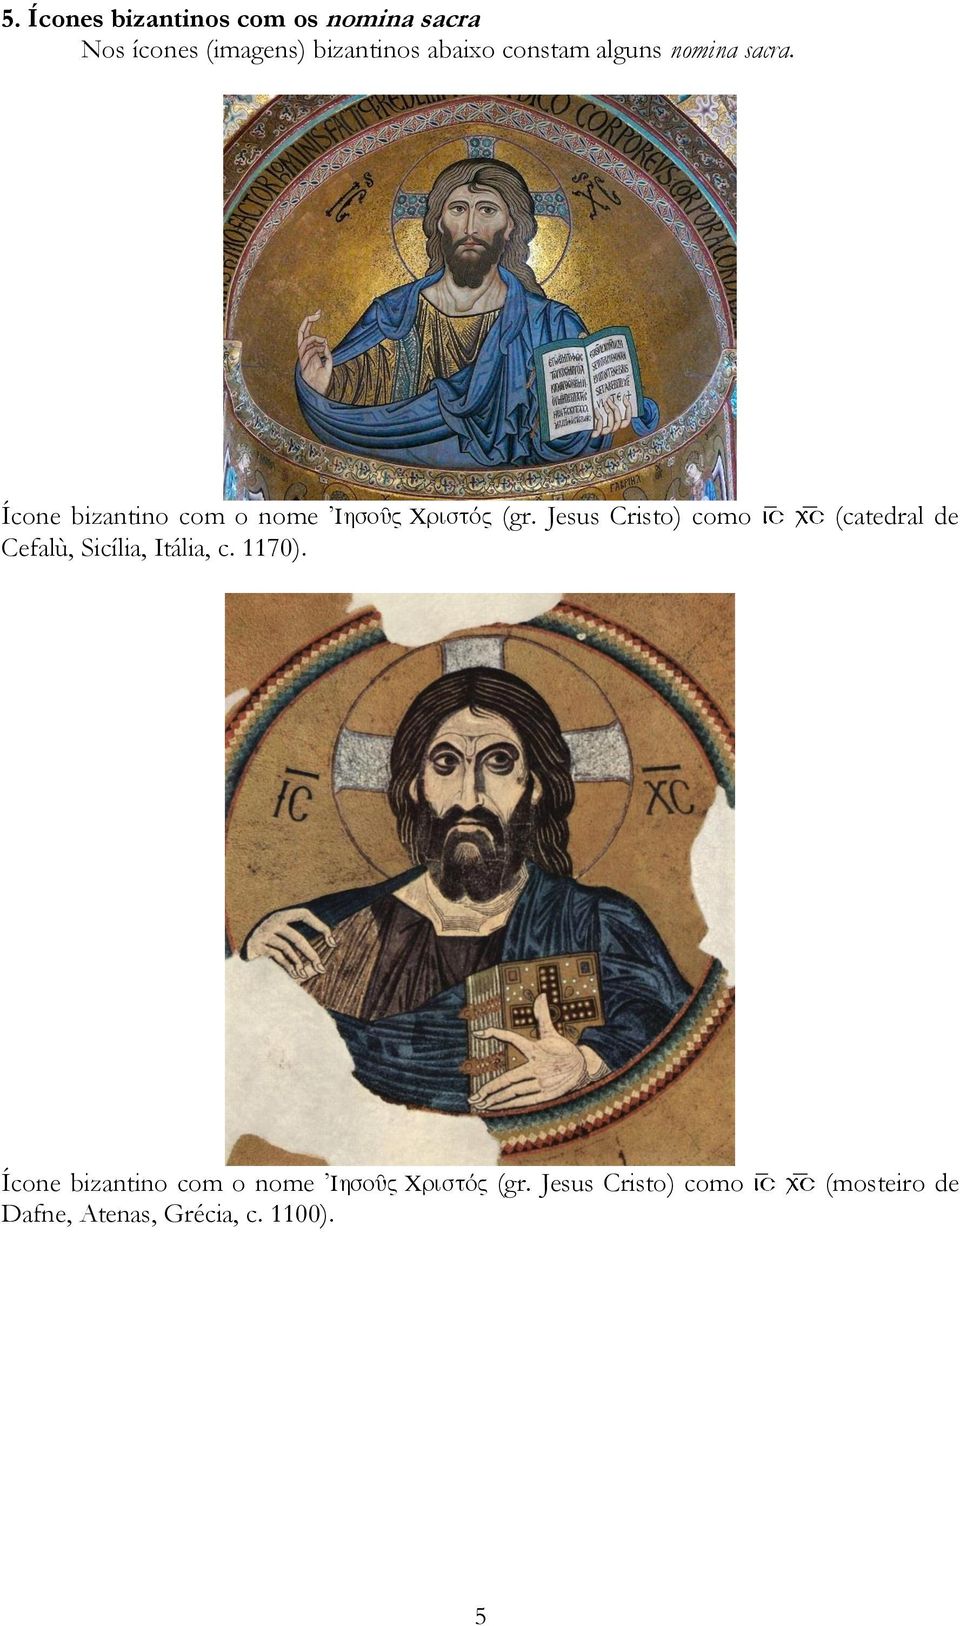 Jesus Cristo) como Cefalù, Sicília, Itália, c. 1170).